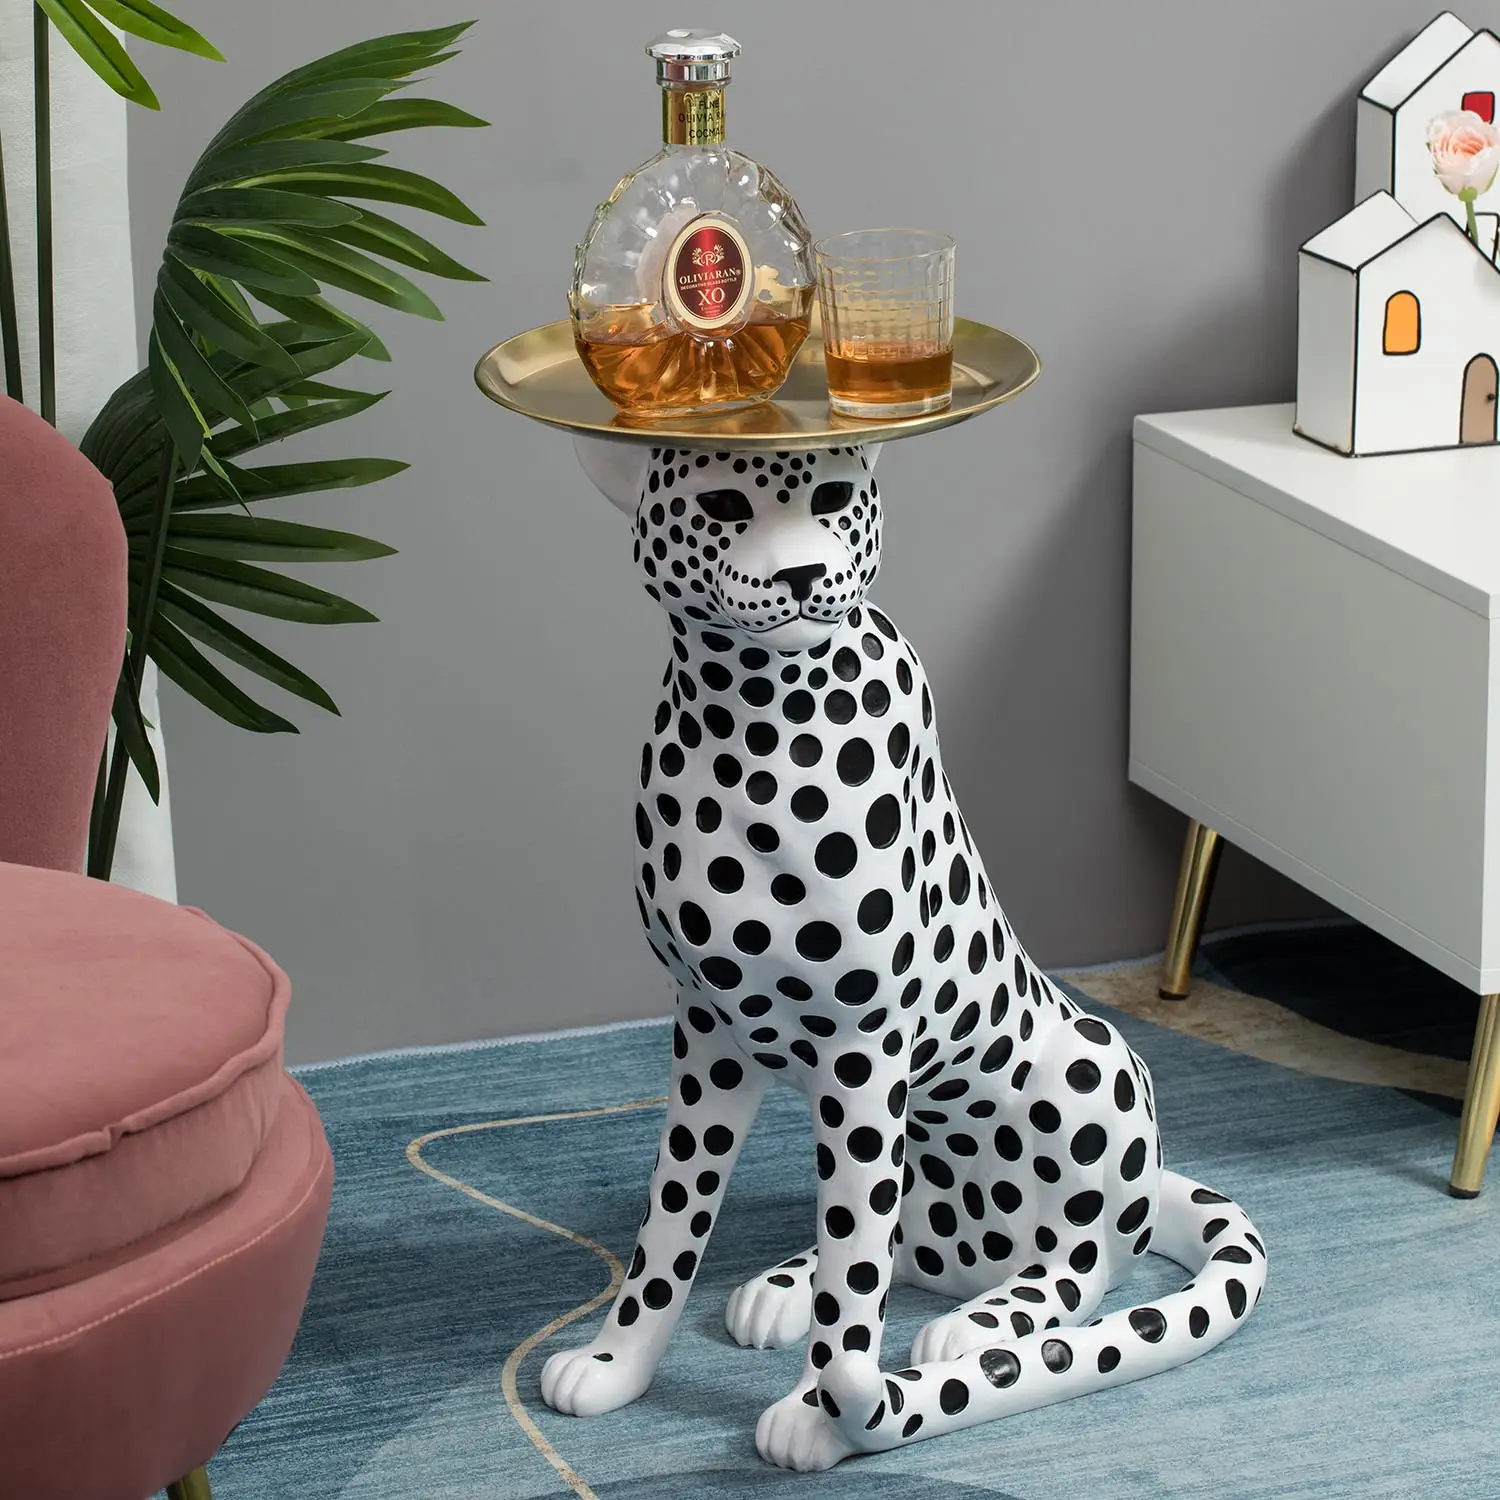 Escultura de estatua de lujo con decoración de animales de leopardo de tamaño real, electrodomésticos de alta gama para interiores, piezas de exhibición para decoración del hogar